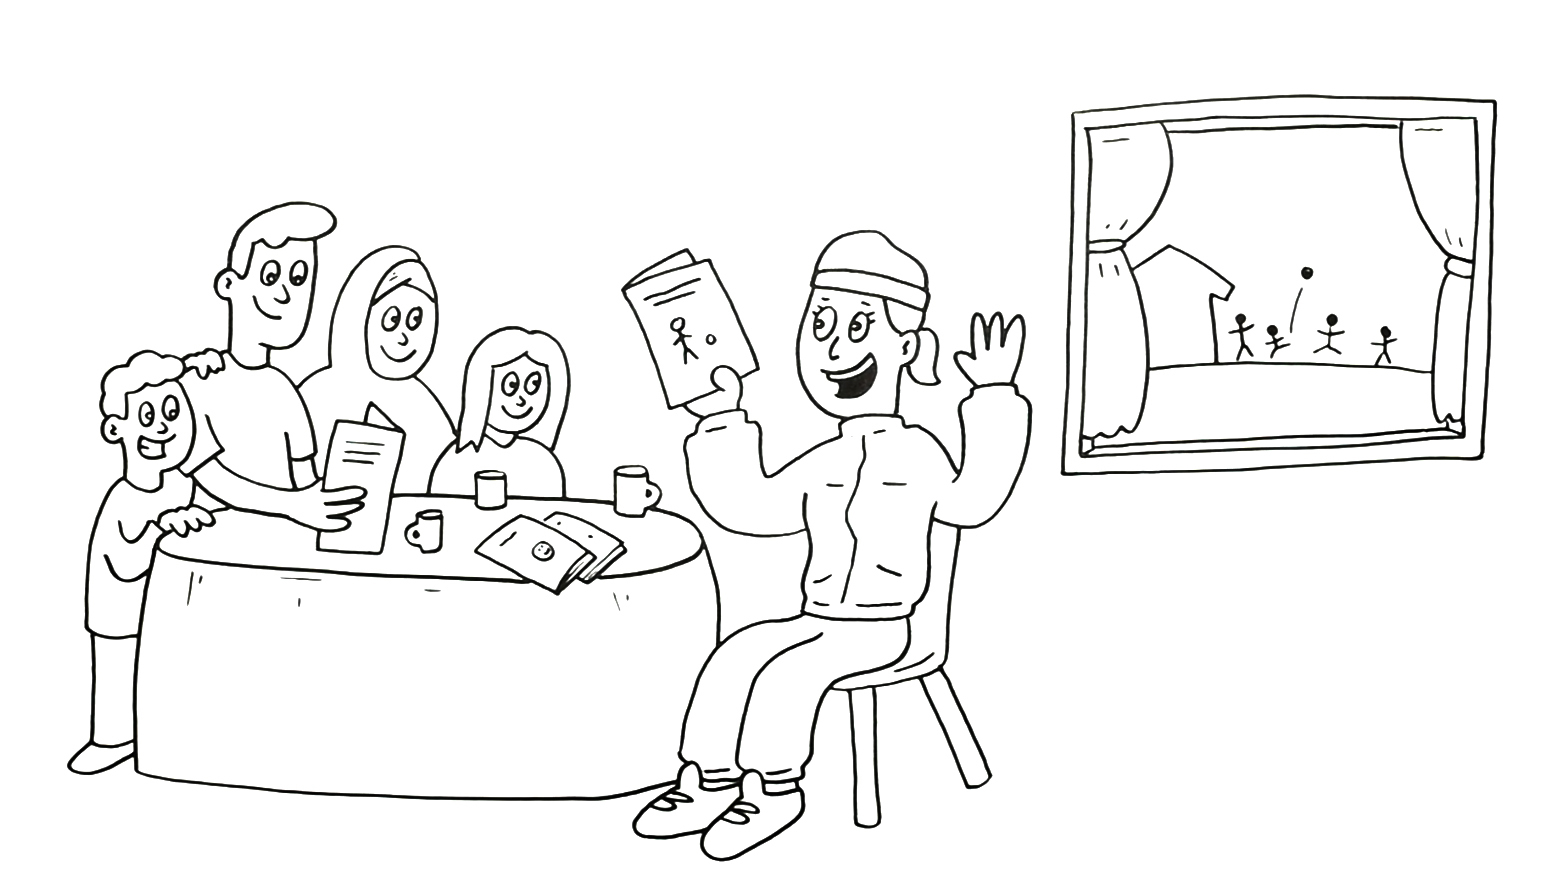 Tegning som viser en aktivitetsguide som snakker med en familie